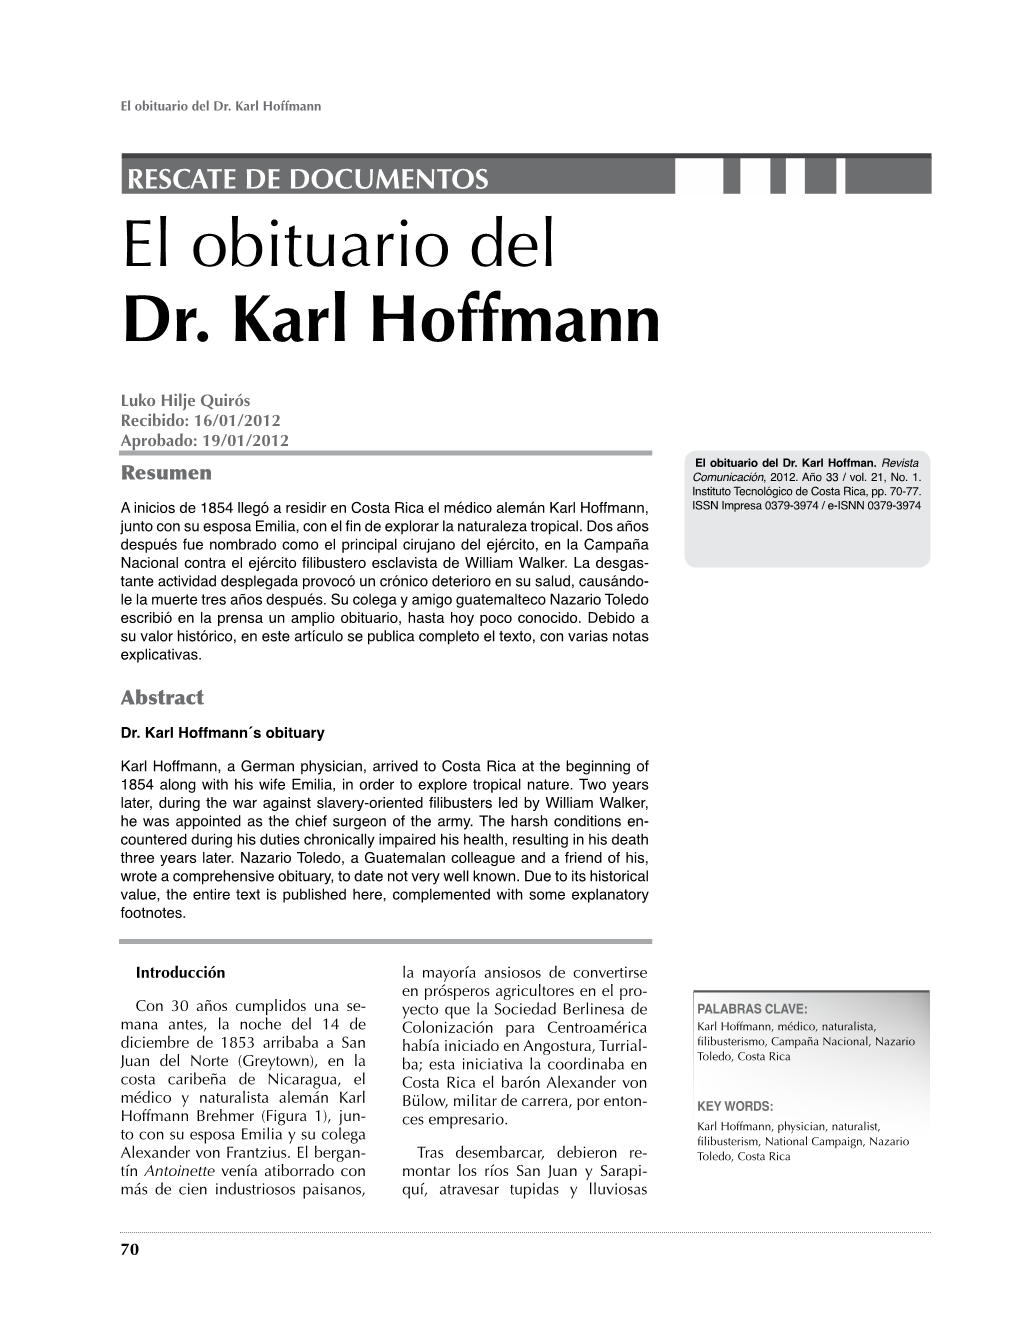 El Obituario Del Dr. Karl Hoffmann